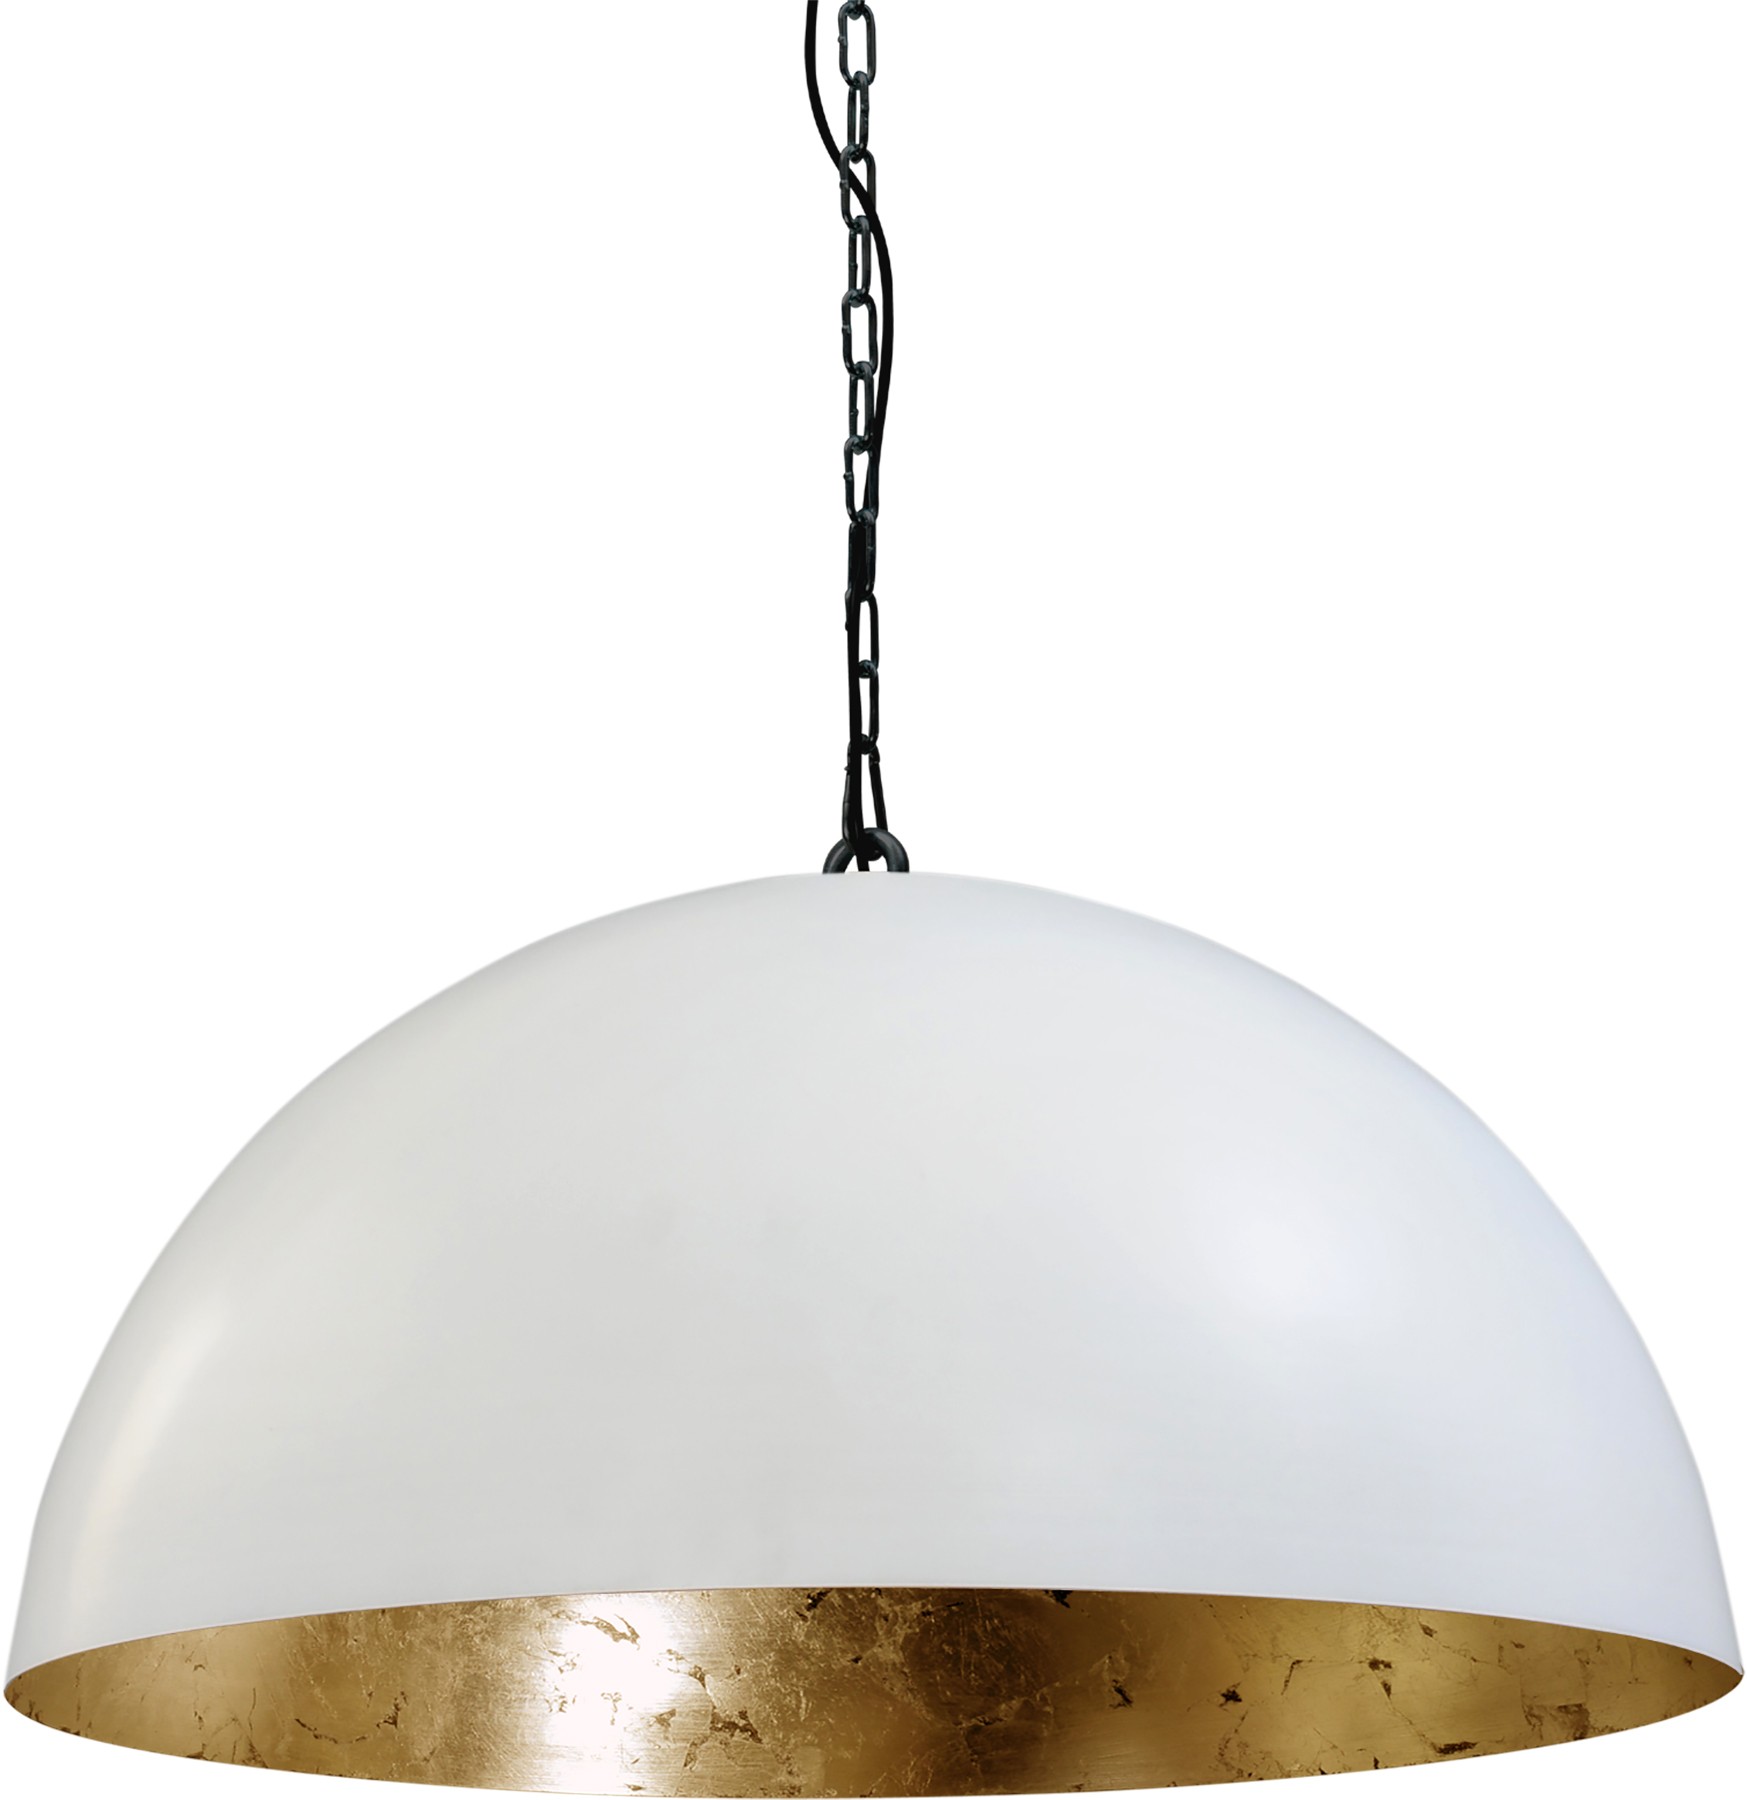 Pendelleuchte gold-weiß, Industrielampe/ Retro-style, Schirm-Ø: 60 cm